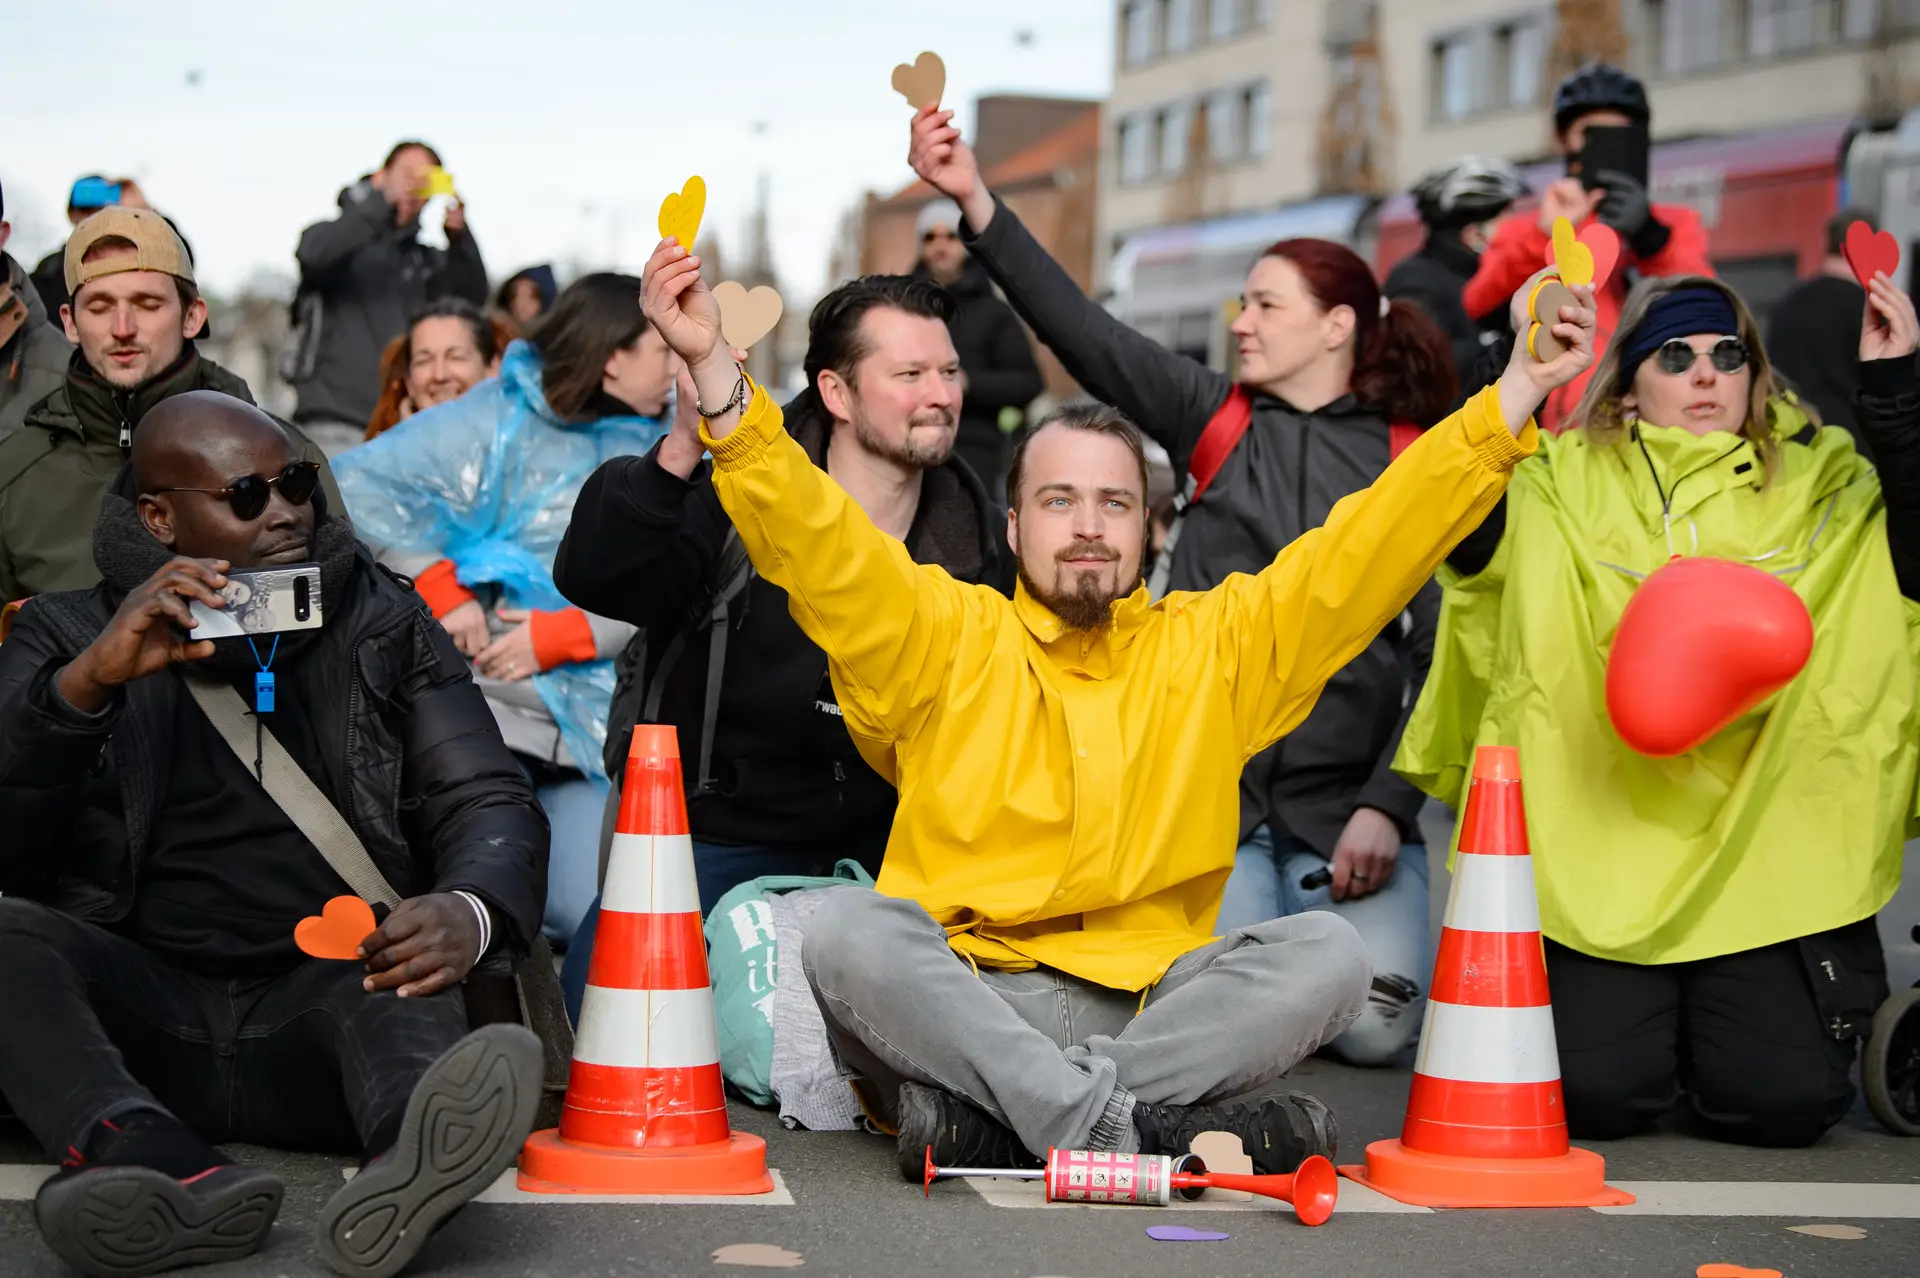 De corações de papel amarelos nas mãos e sem preocupações com distanciamento social, estes manifestantes participam no protesto “Libertem os cidadãos de Kassel — Direitos Básicos e Democracia”, na Alemanha